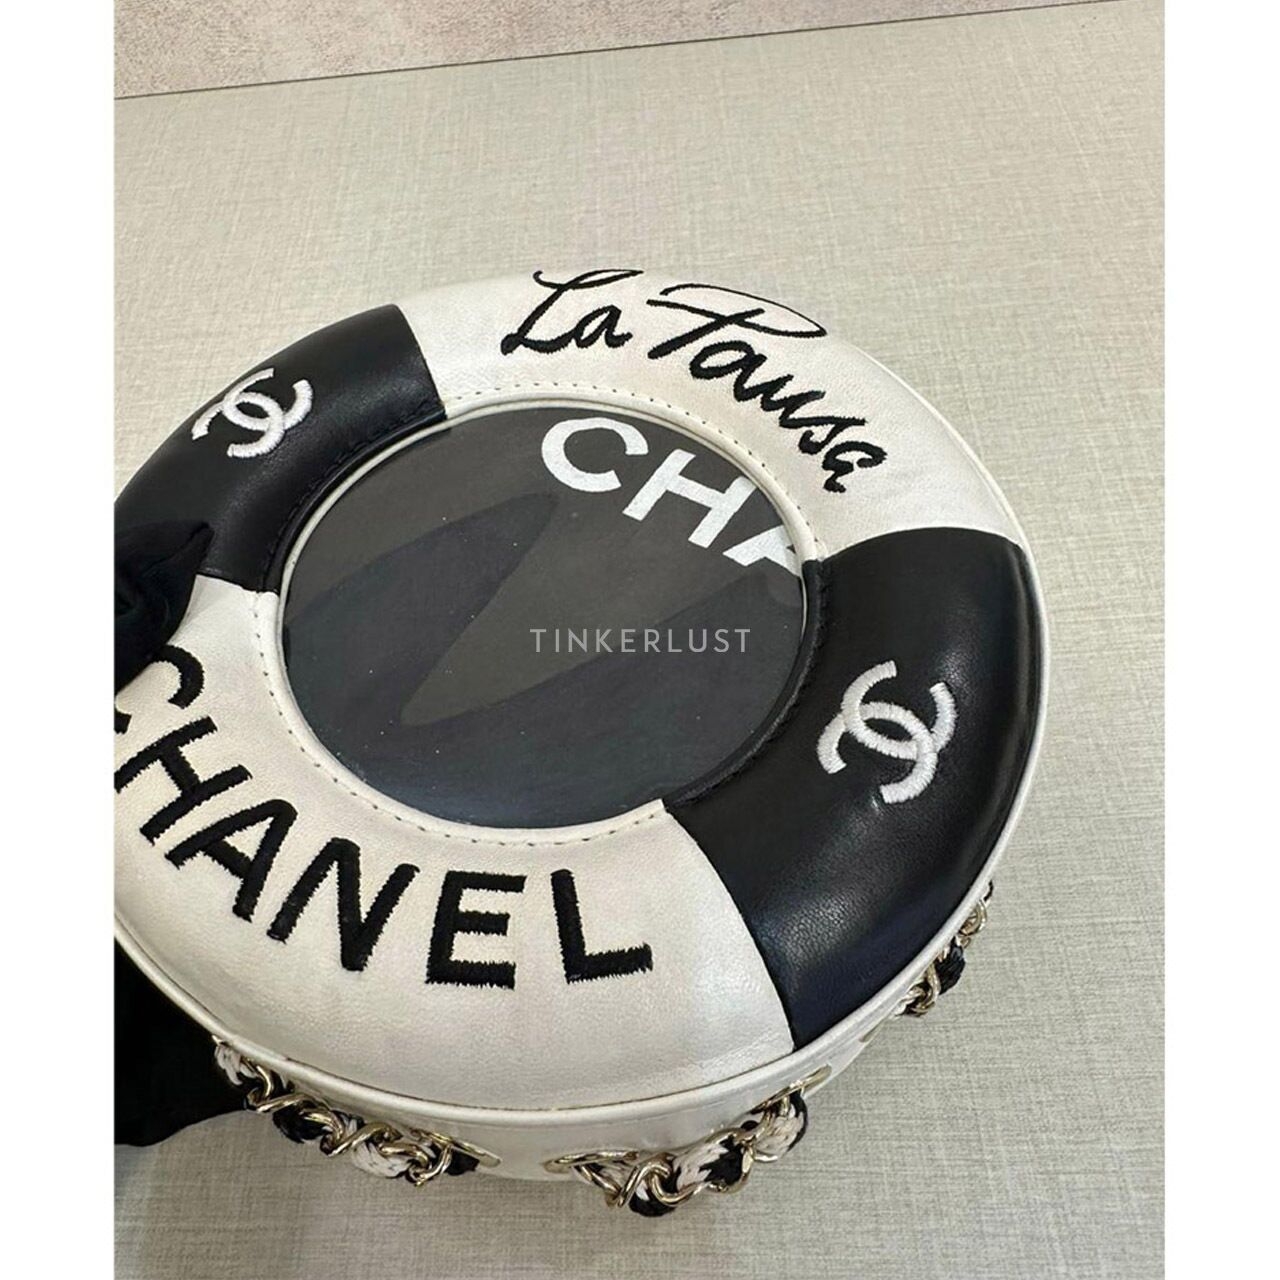 Chanel La Pausa #26 2018 Sling Bag